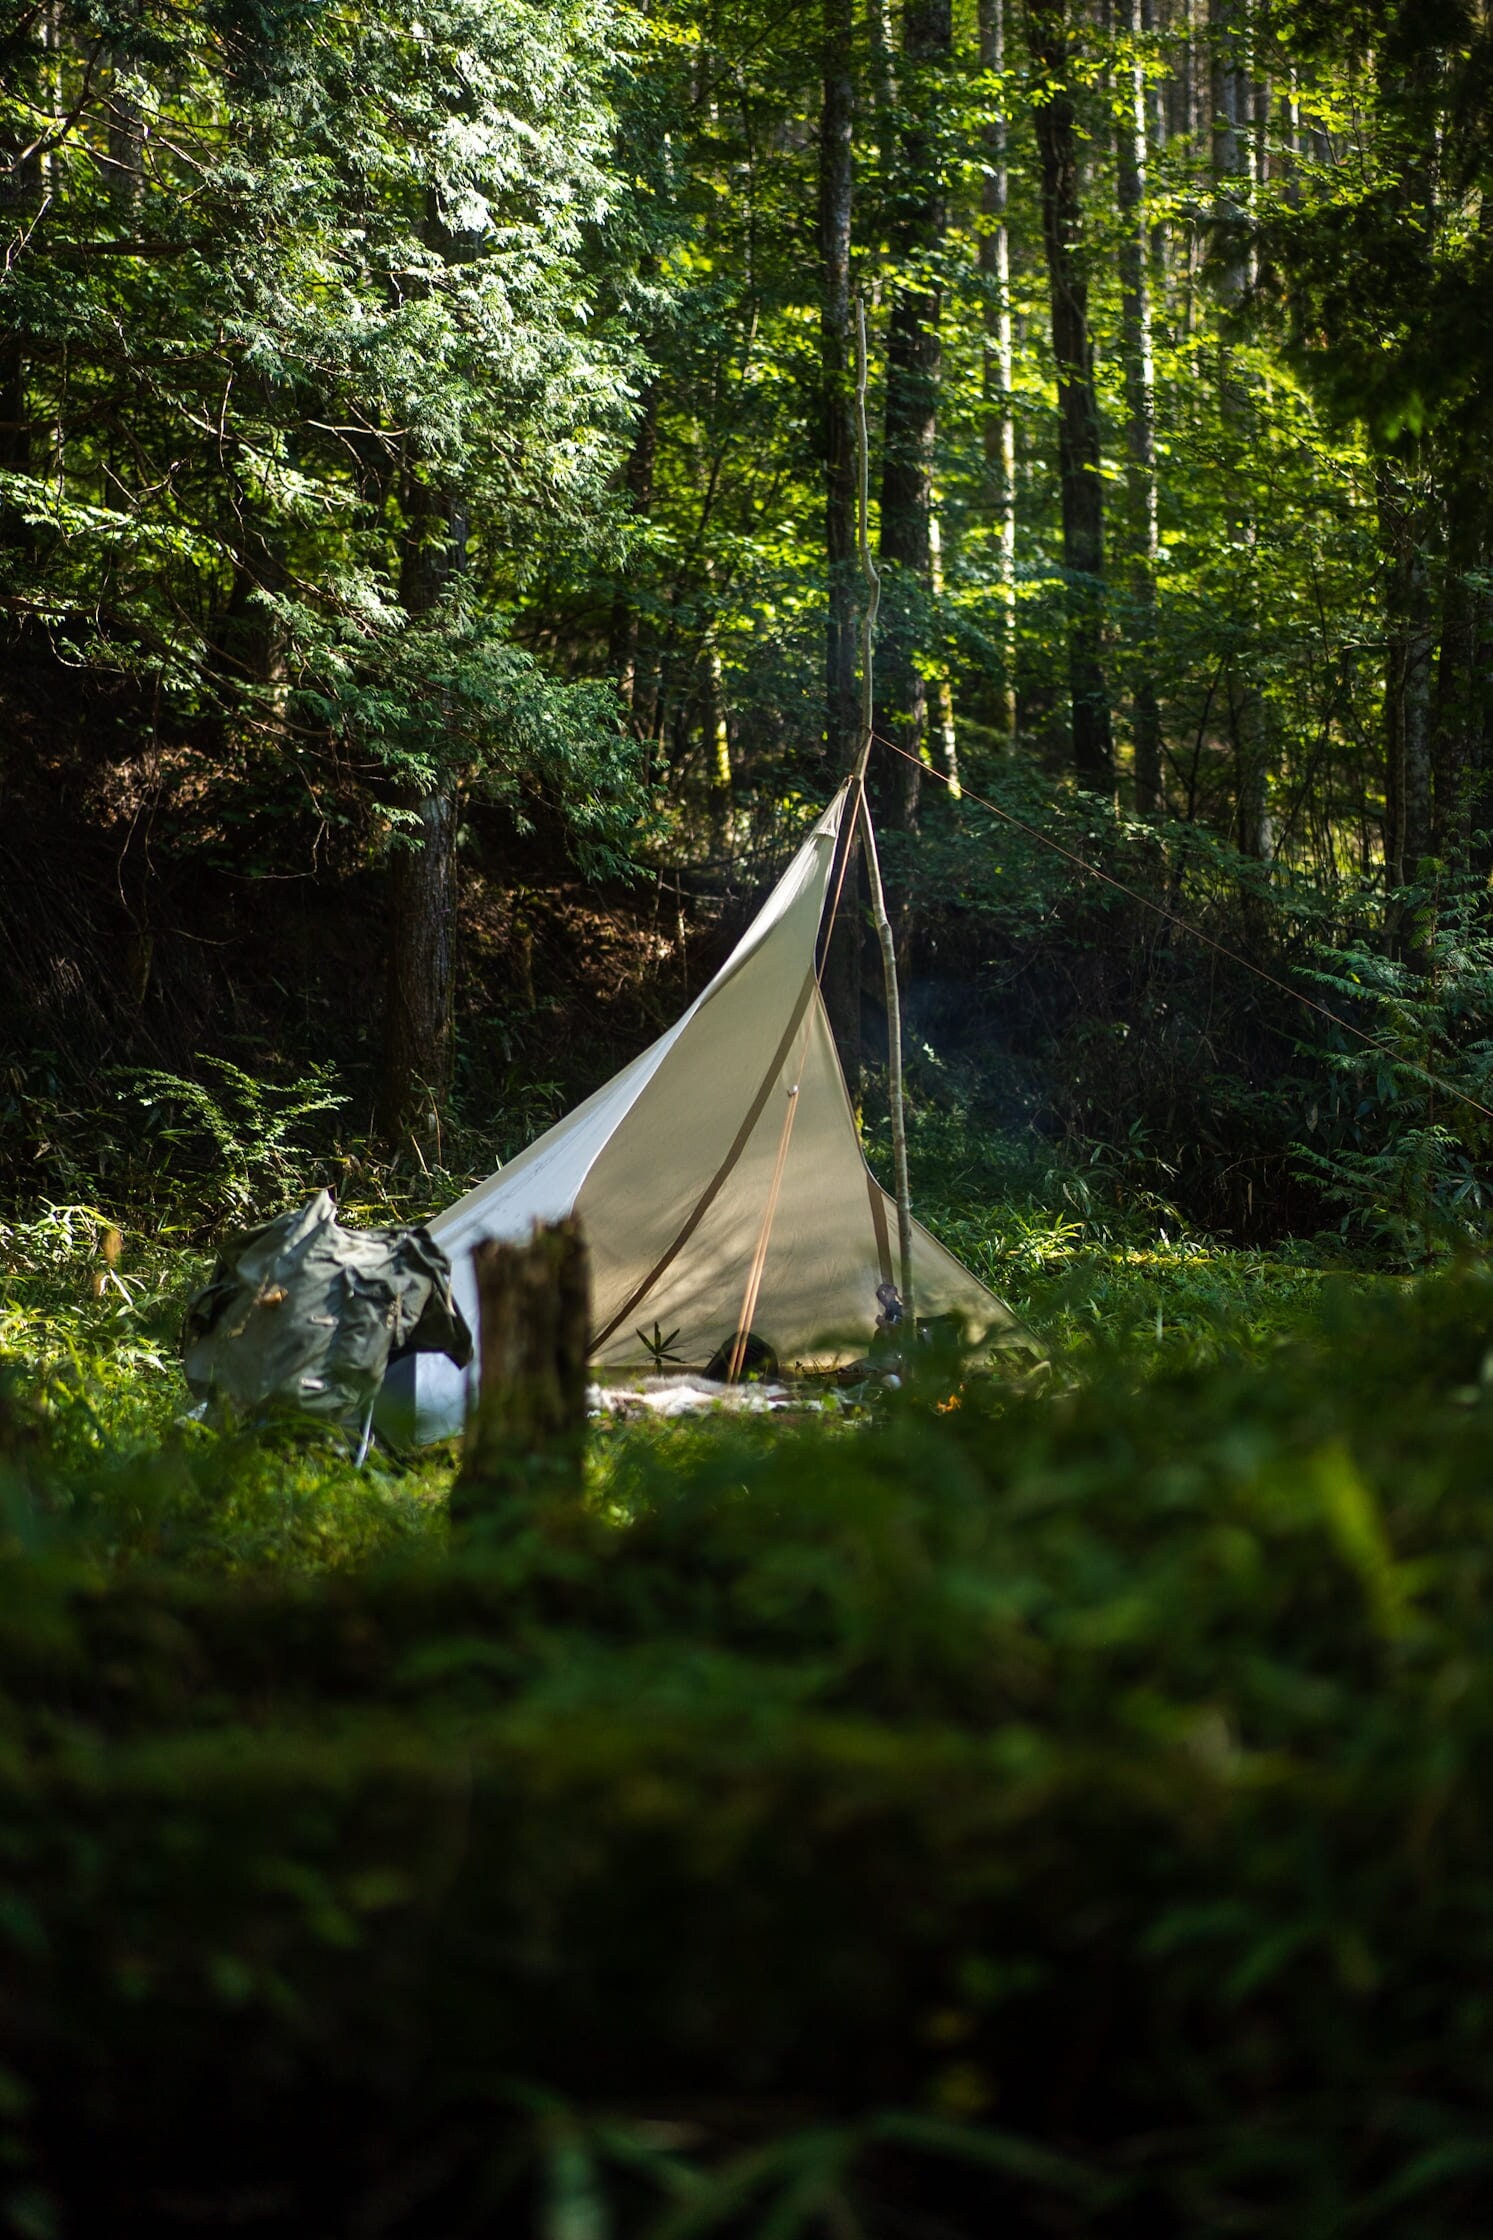 Couverture de chasse de protection en tissu pour le camping en plein air 